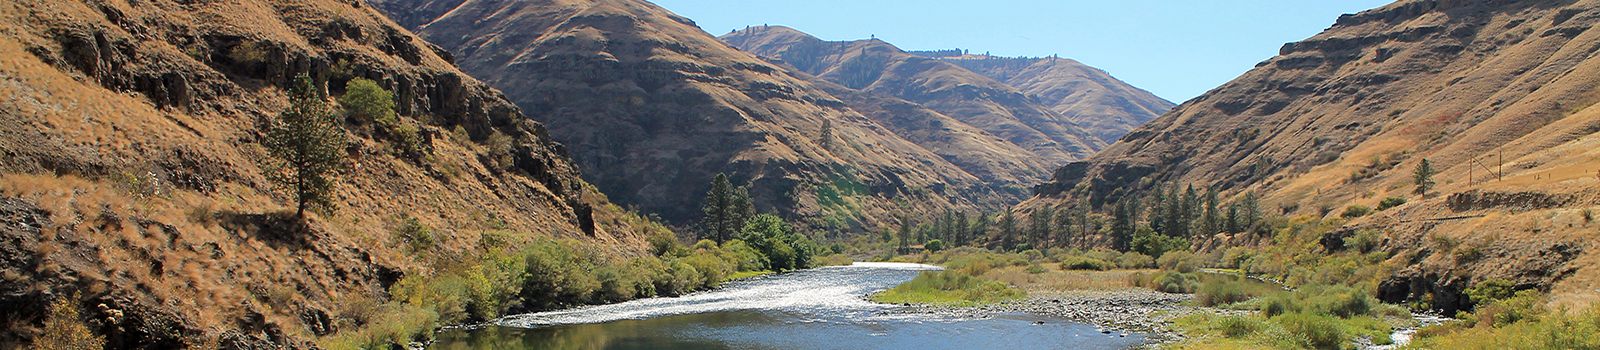 Grande Ronde River meandering through hillsides in Oregon.